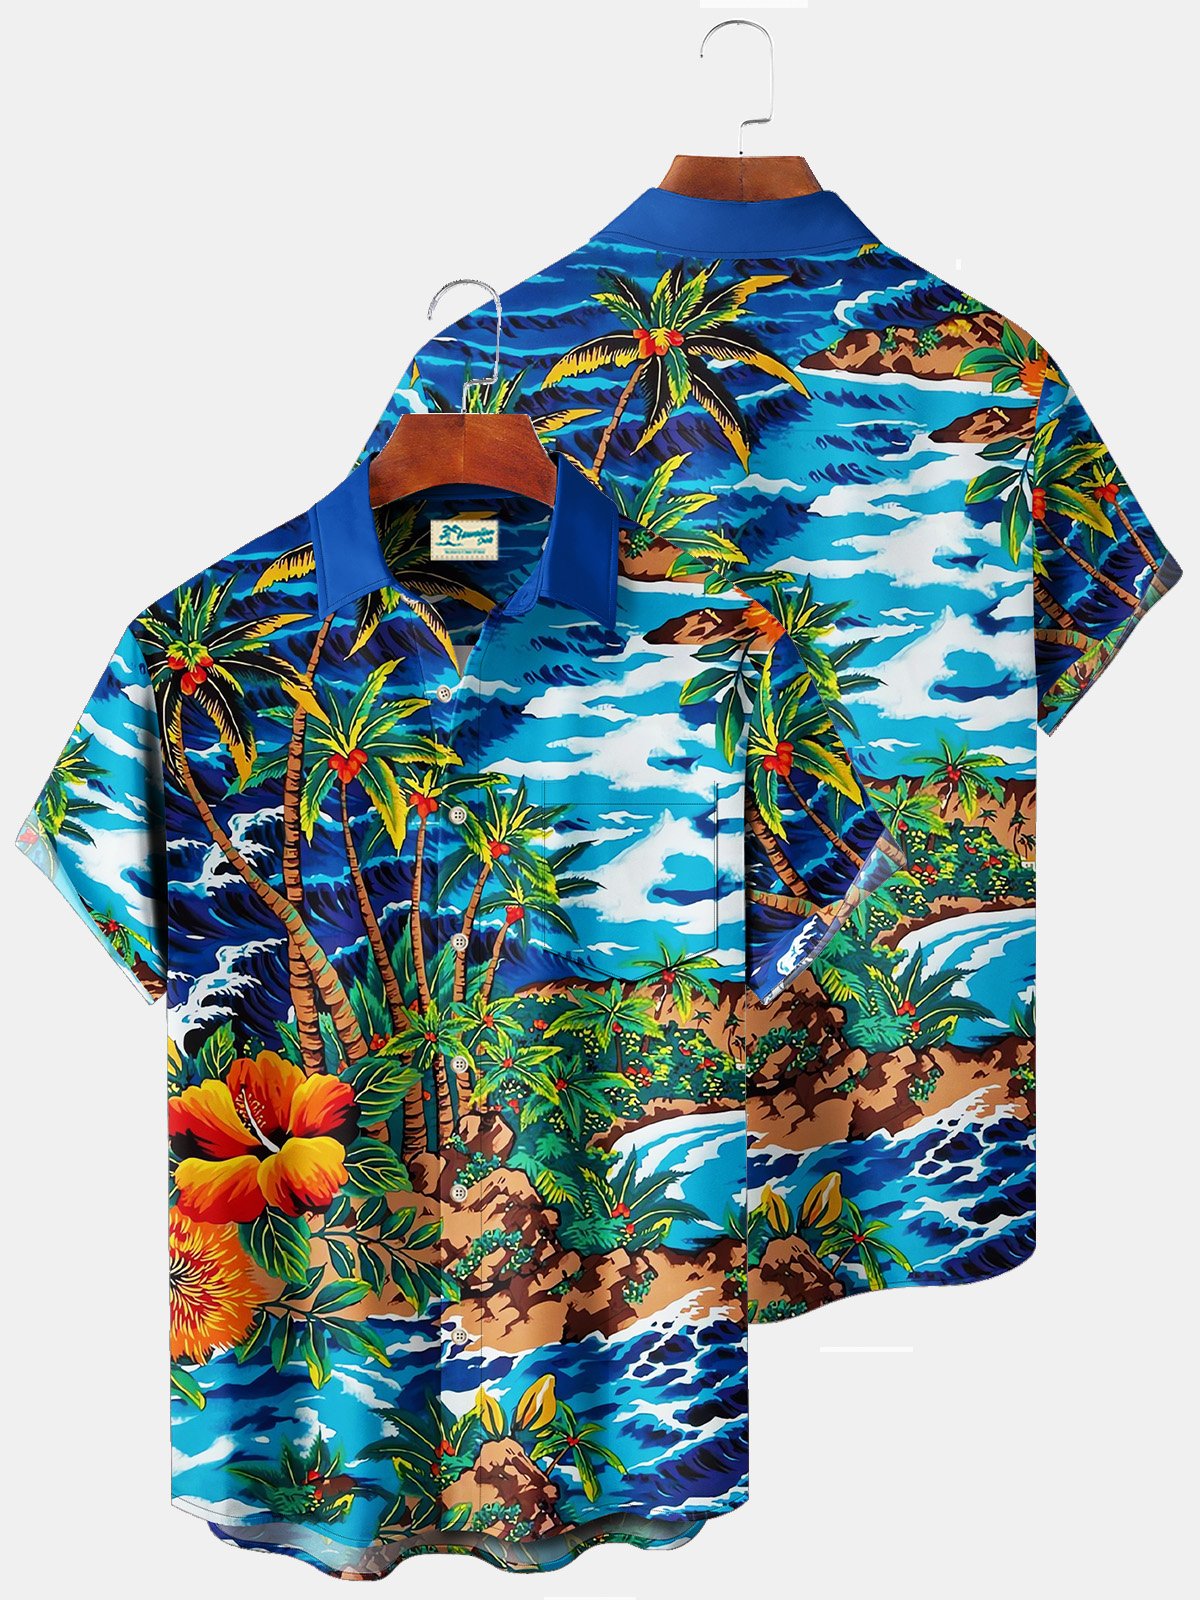 Royaura Beach Vacation Blue Men's Hawaiian Shirt Coconut Tree Stretch Plus Size Aloha Camp Pocket Shirts